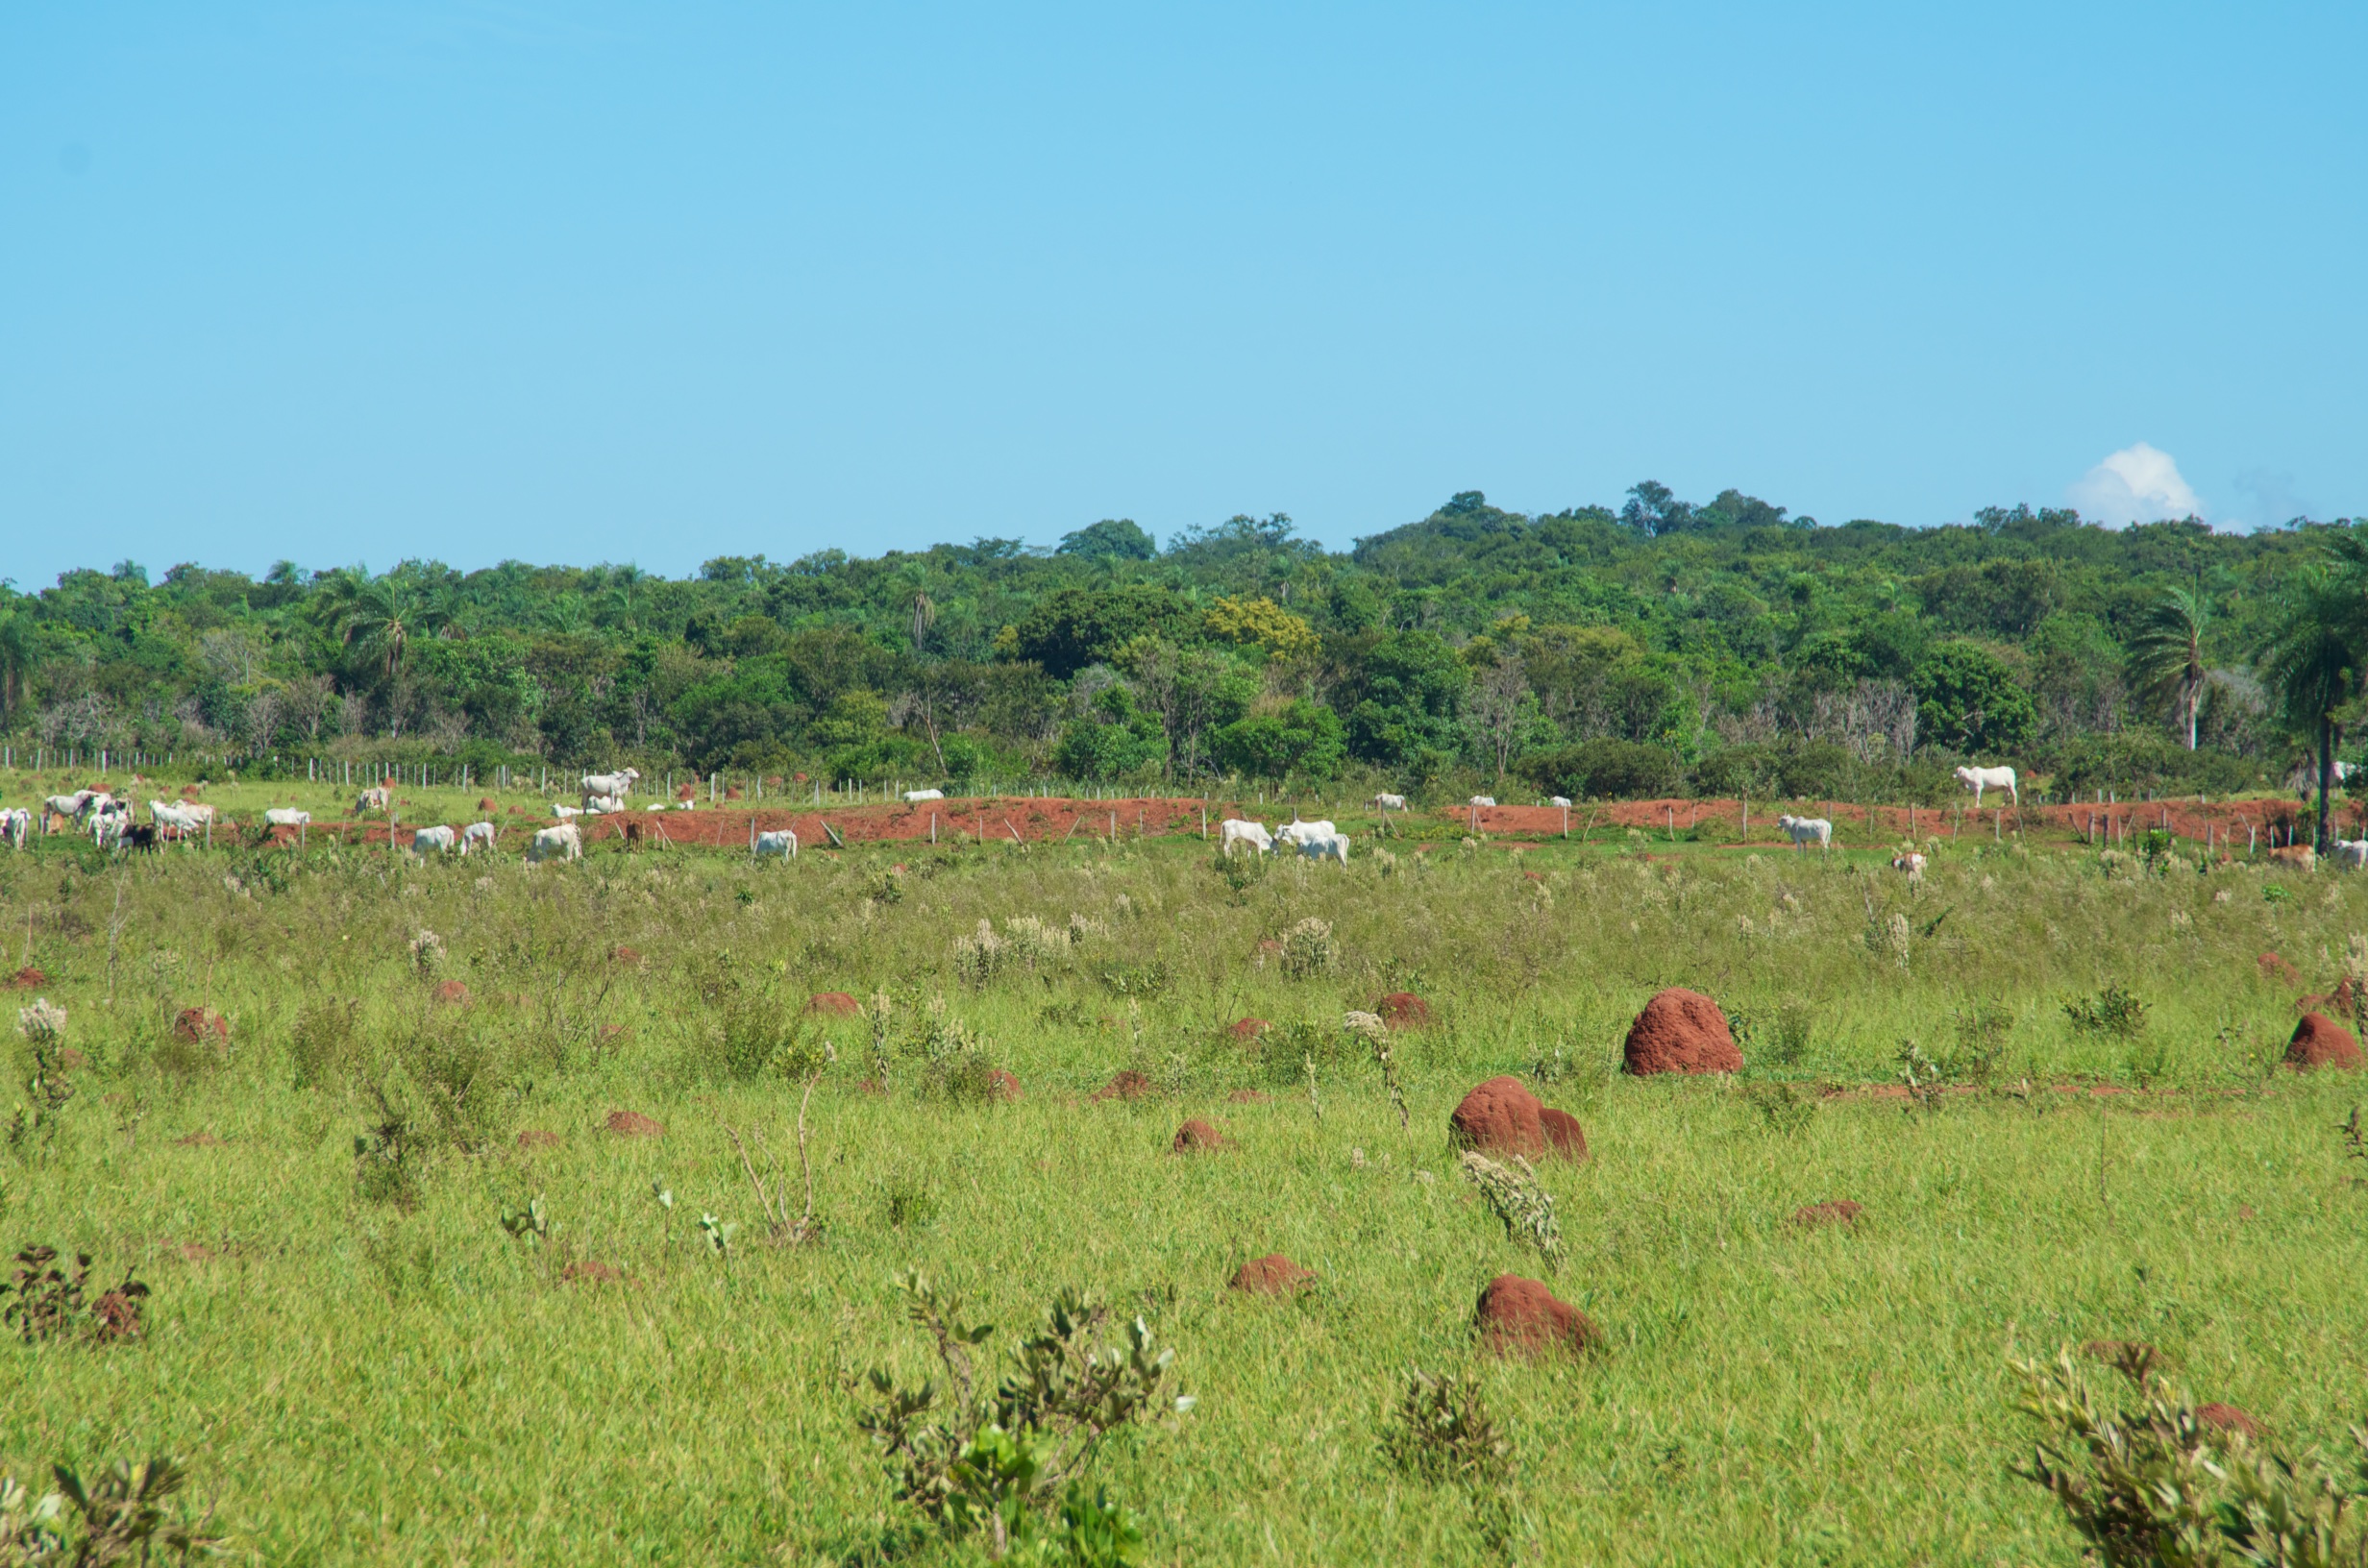  Farmland with termite mounds at Prata, near Bonito, Brazil 